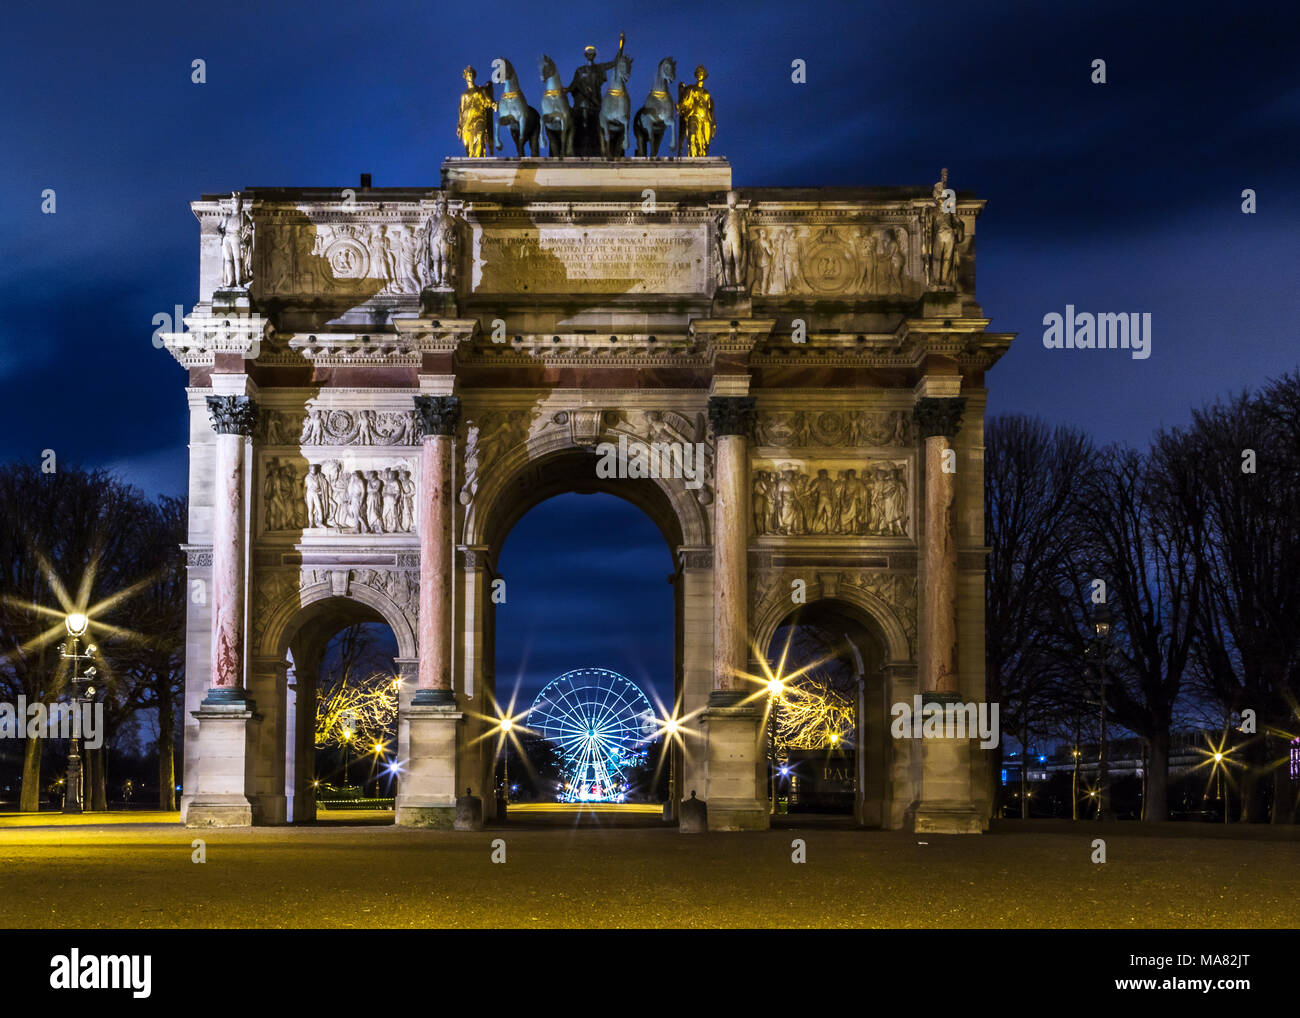 Arc de triomphe du giostra di notte il framing il Roue de Paris ruota attraverso l'arco centrale, affiancata da sagome ad albero e scintillanti luci di strada Foto Stock